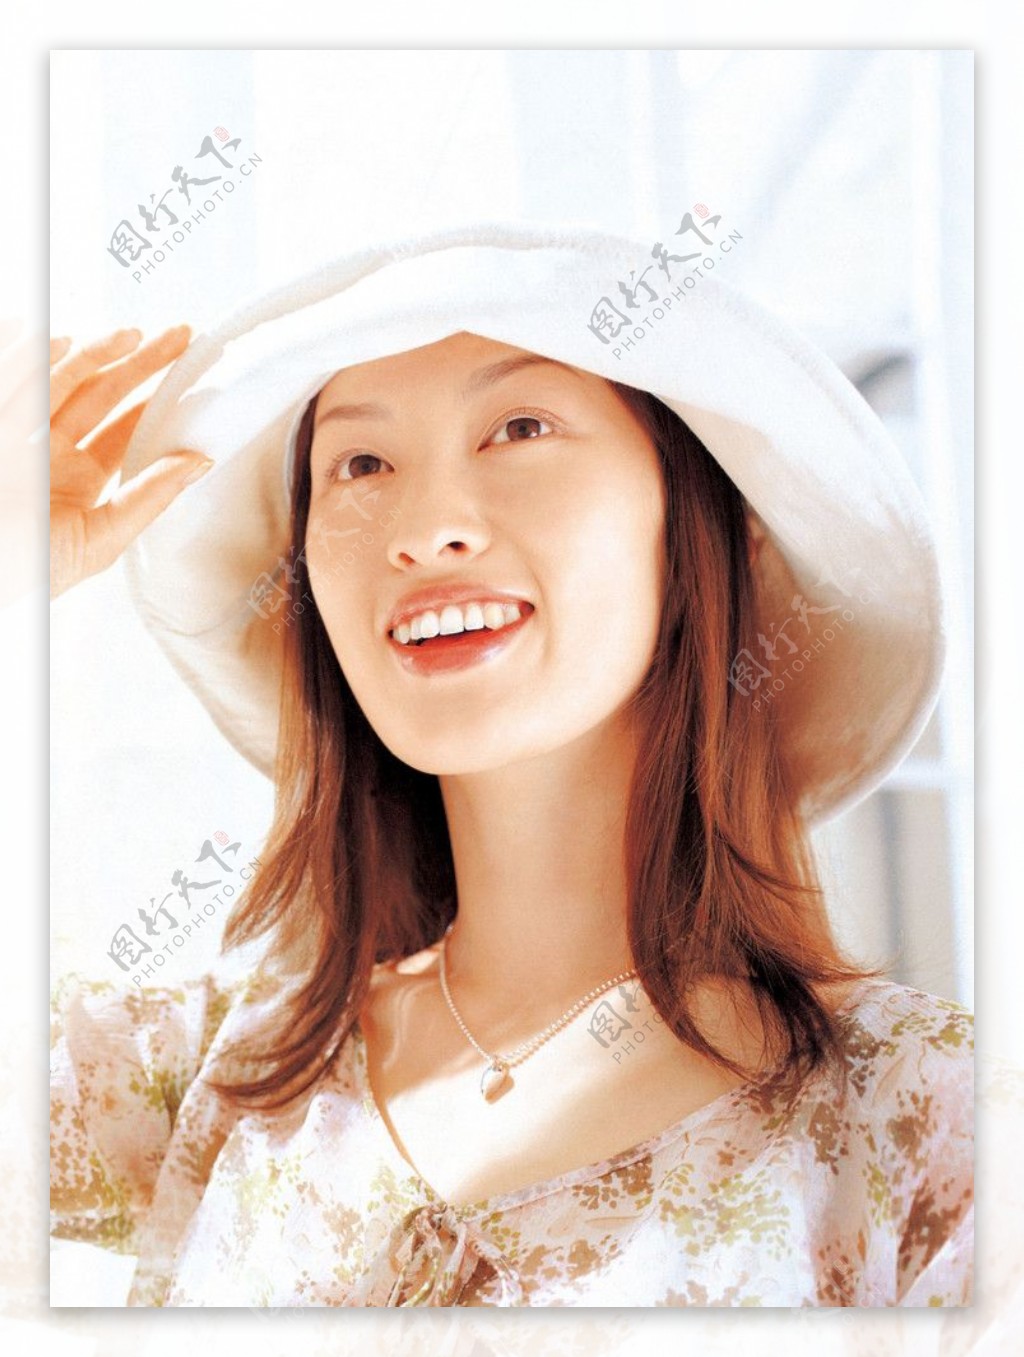 日本护肤品彩妆防晒女性人物模特图片